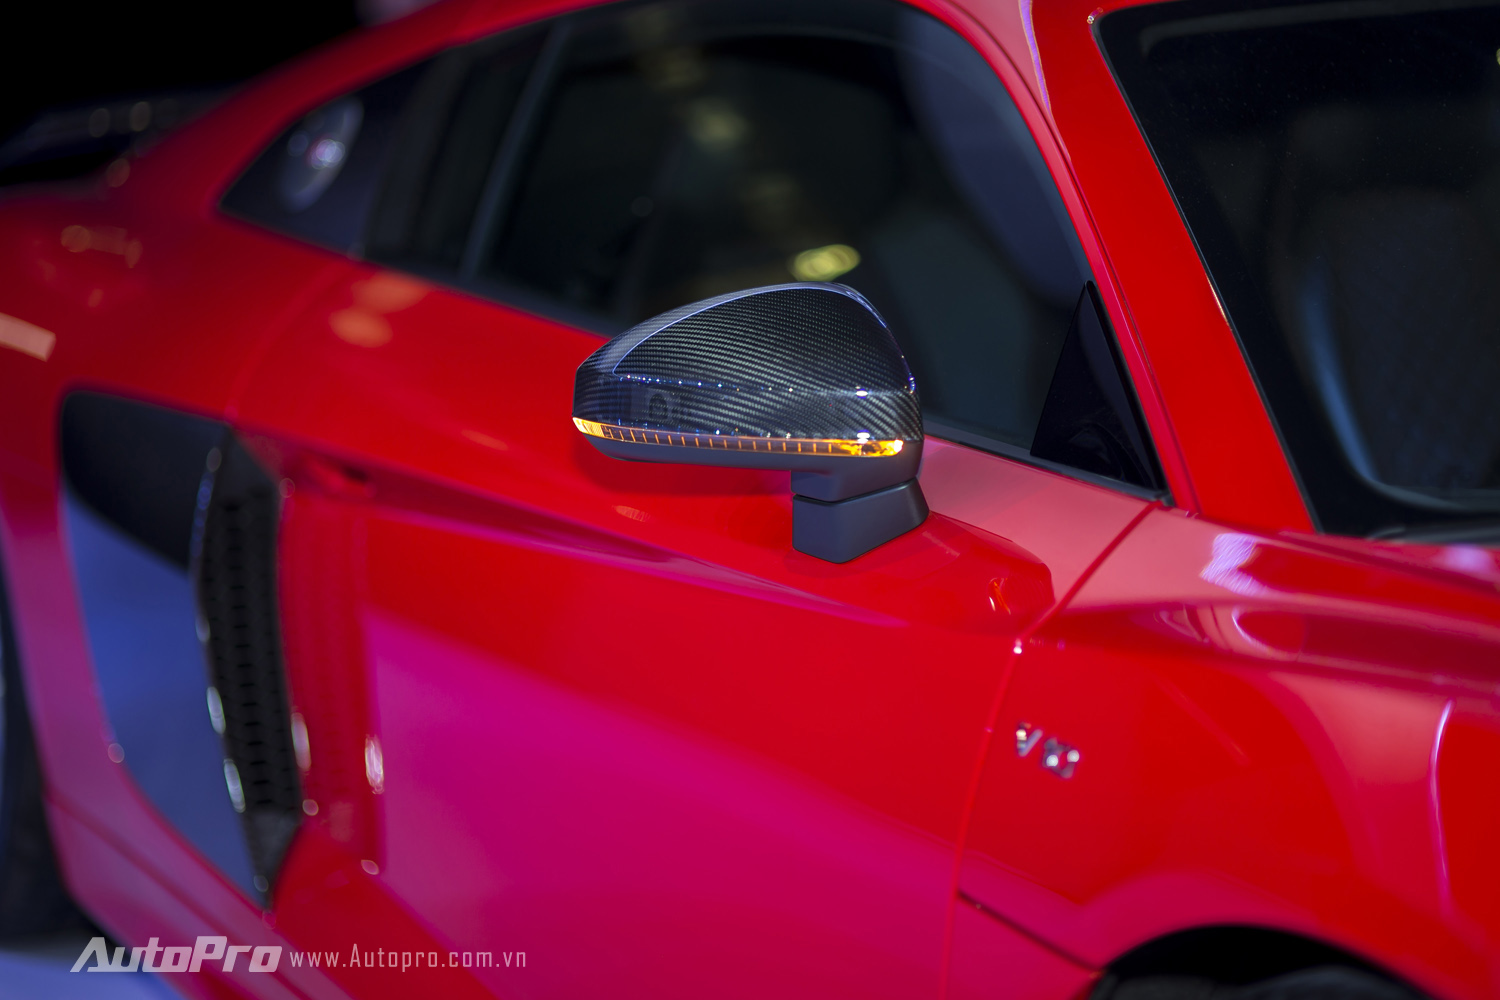 
Gương chiếu hậu của xe được ốp carbon và trang bị đèn tín hiệu dạng LED chạy theo tia khi hoạtd động.
